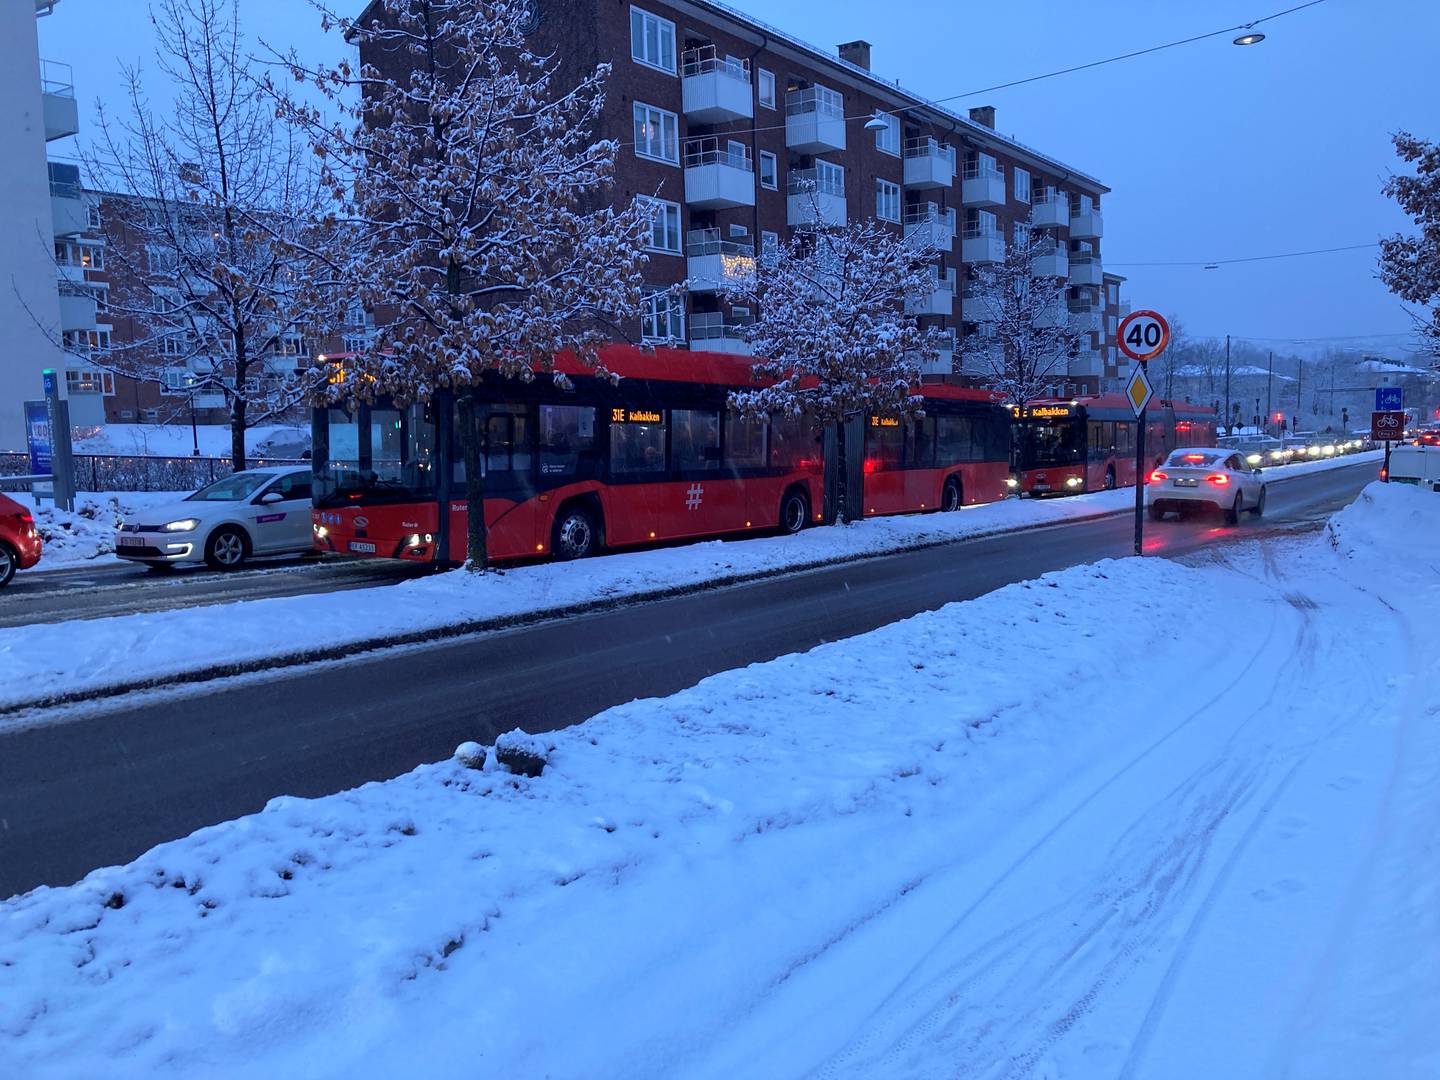 Januar ble en krisemåned for kollektivselskapet Ruter. Så sent som under snøværet i Oslo tirsdag 30. januar, var det enkelte busser som slet med å komme seg fram. Hjulene på denne bussen spant lenge før de fikk feste opp mot Carl Berners plass.